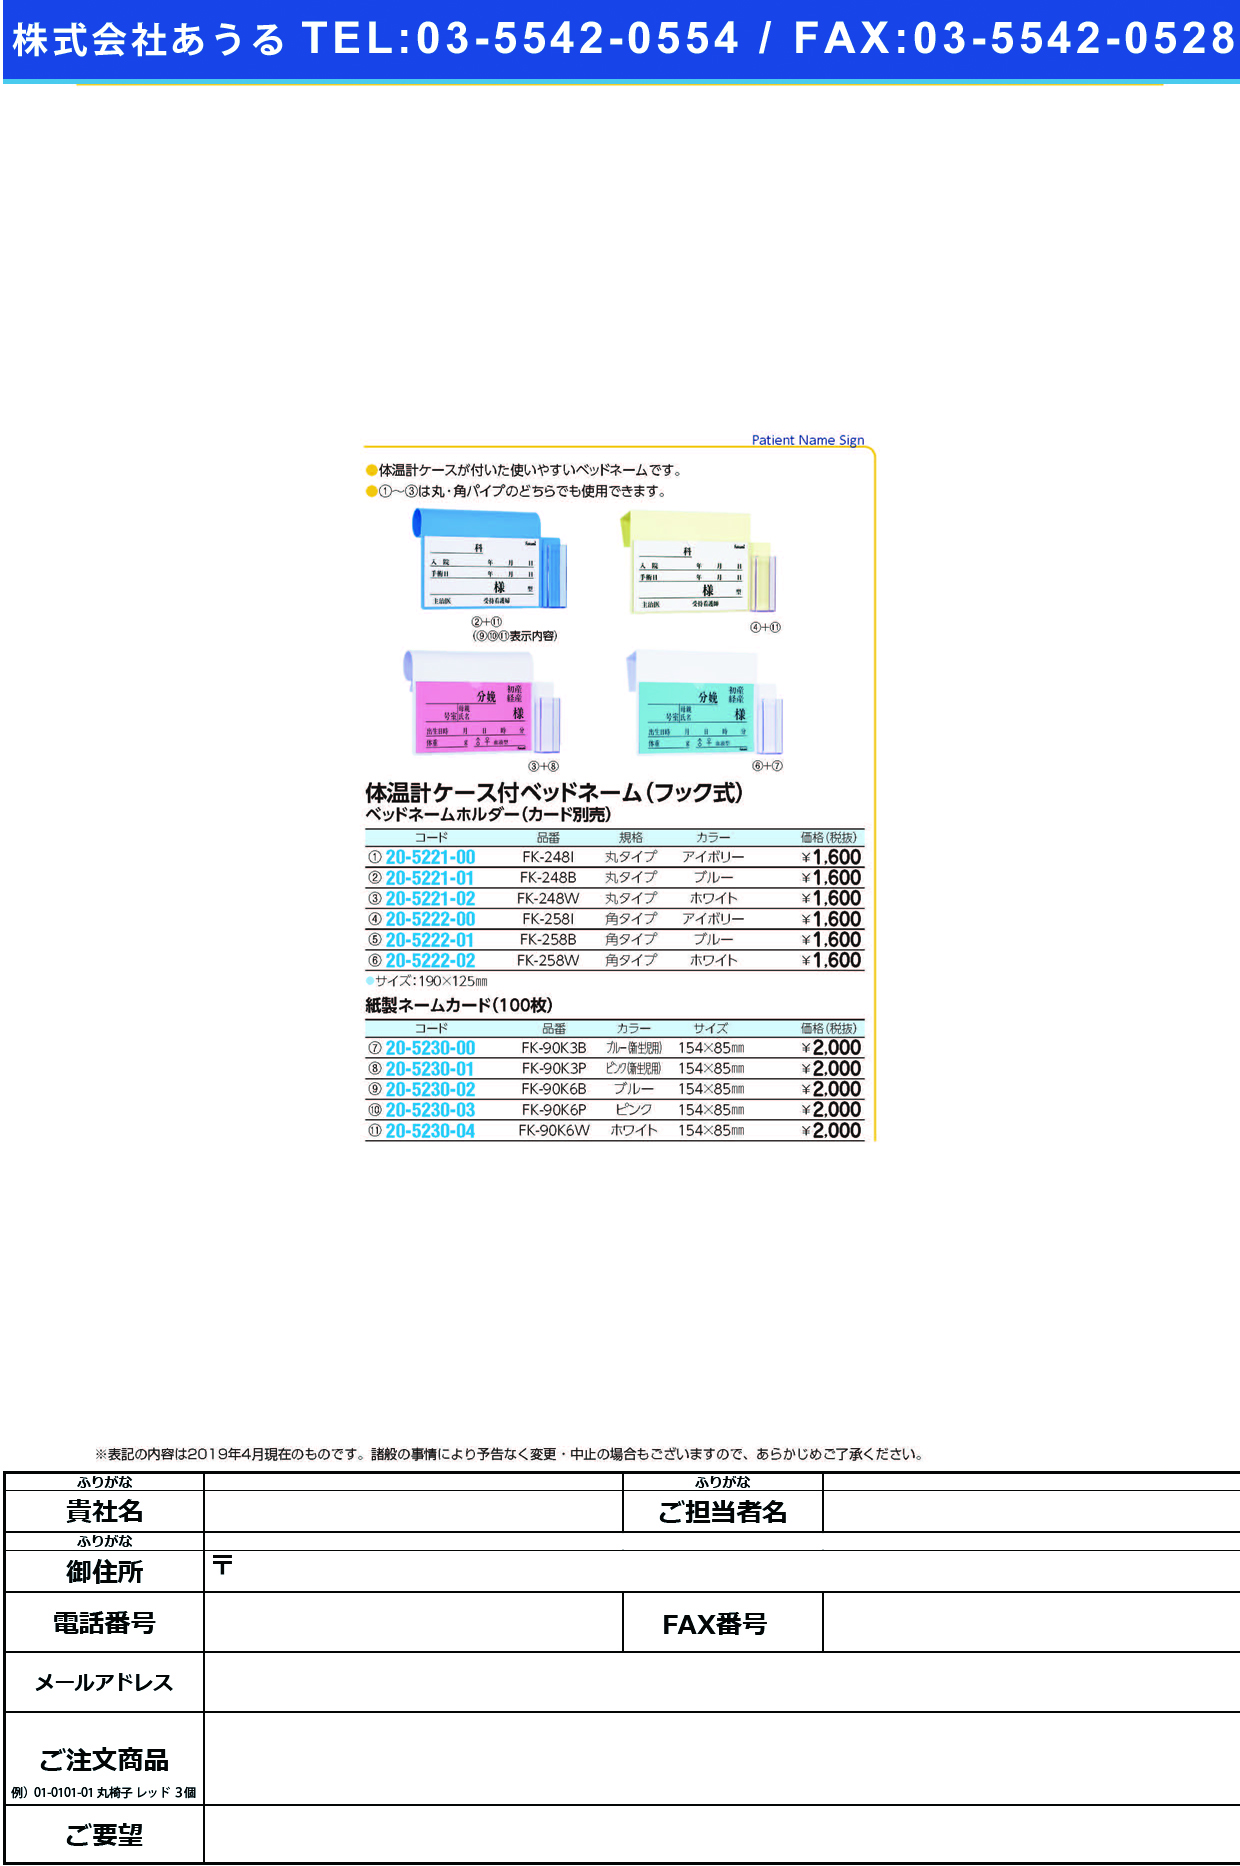 (20-5230-01)ネームカード（紙）新生児用 FK-90K3P(100ﾏｲｲﾘ) ﾈｰﾑｶｰﾄﾞ【1束単位】【2019年カタログ商品】